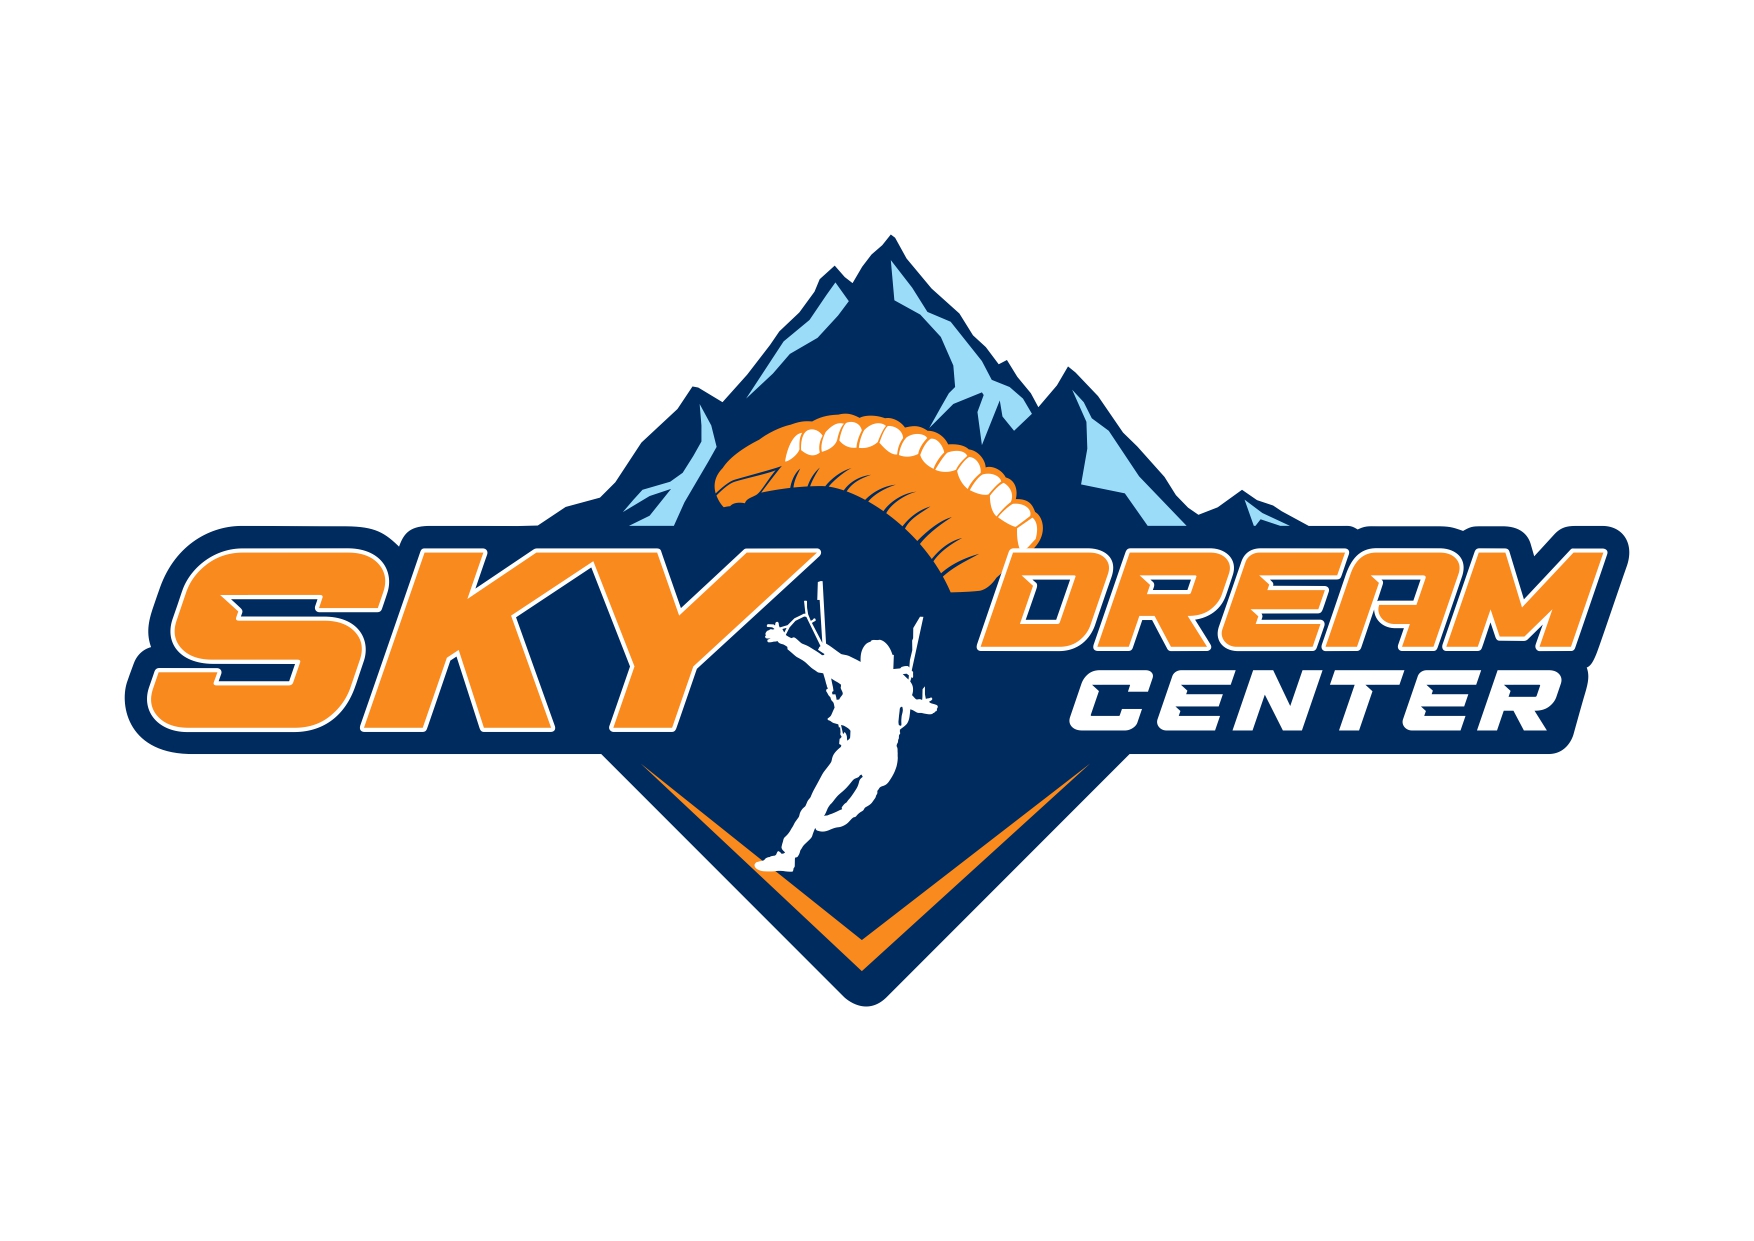 Sky Dream Center logo